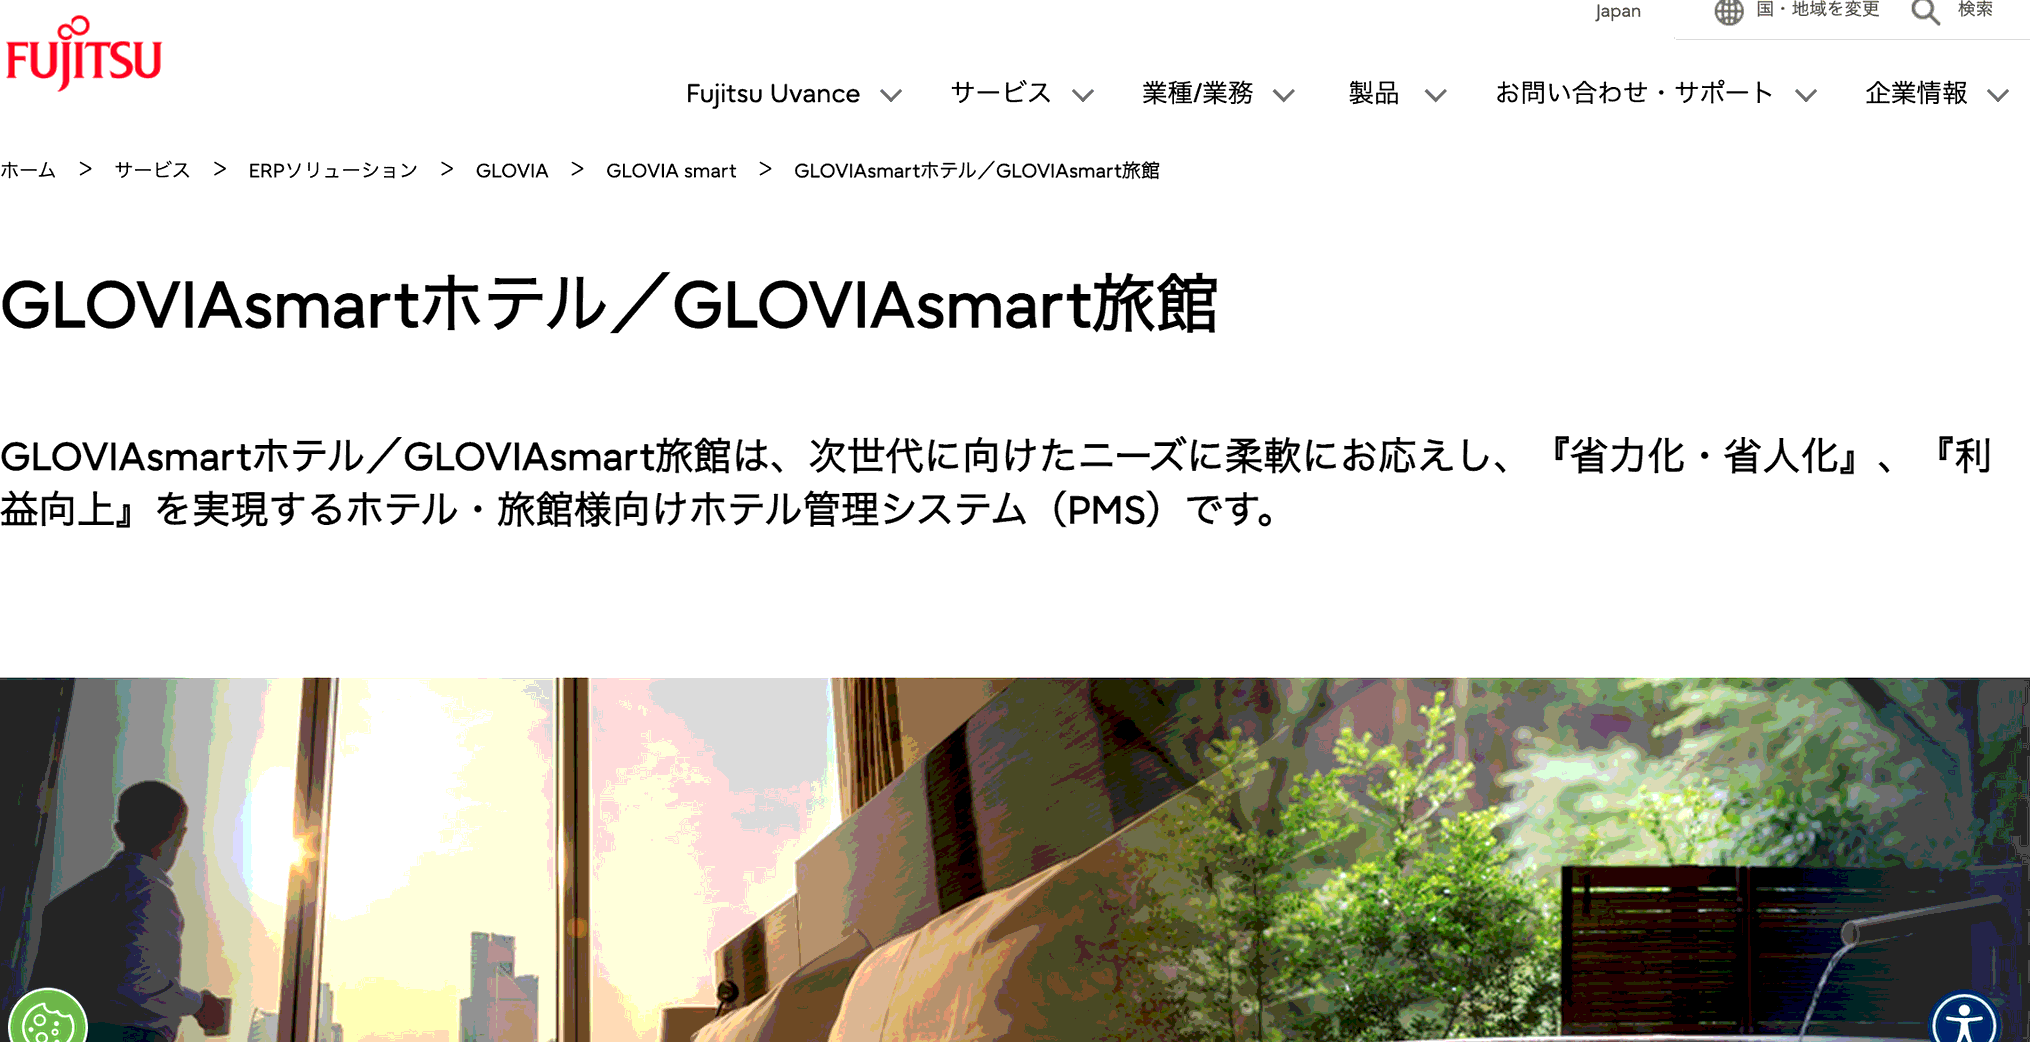 ホテル・旅館システムGLOVIA smart